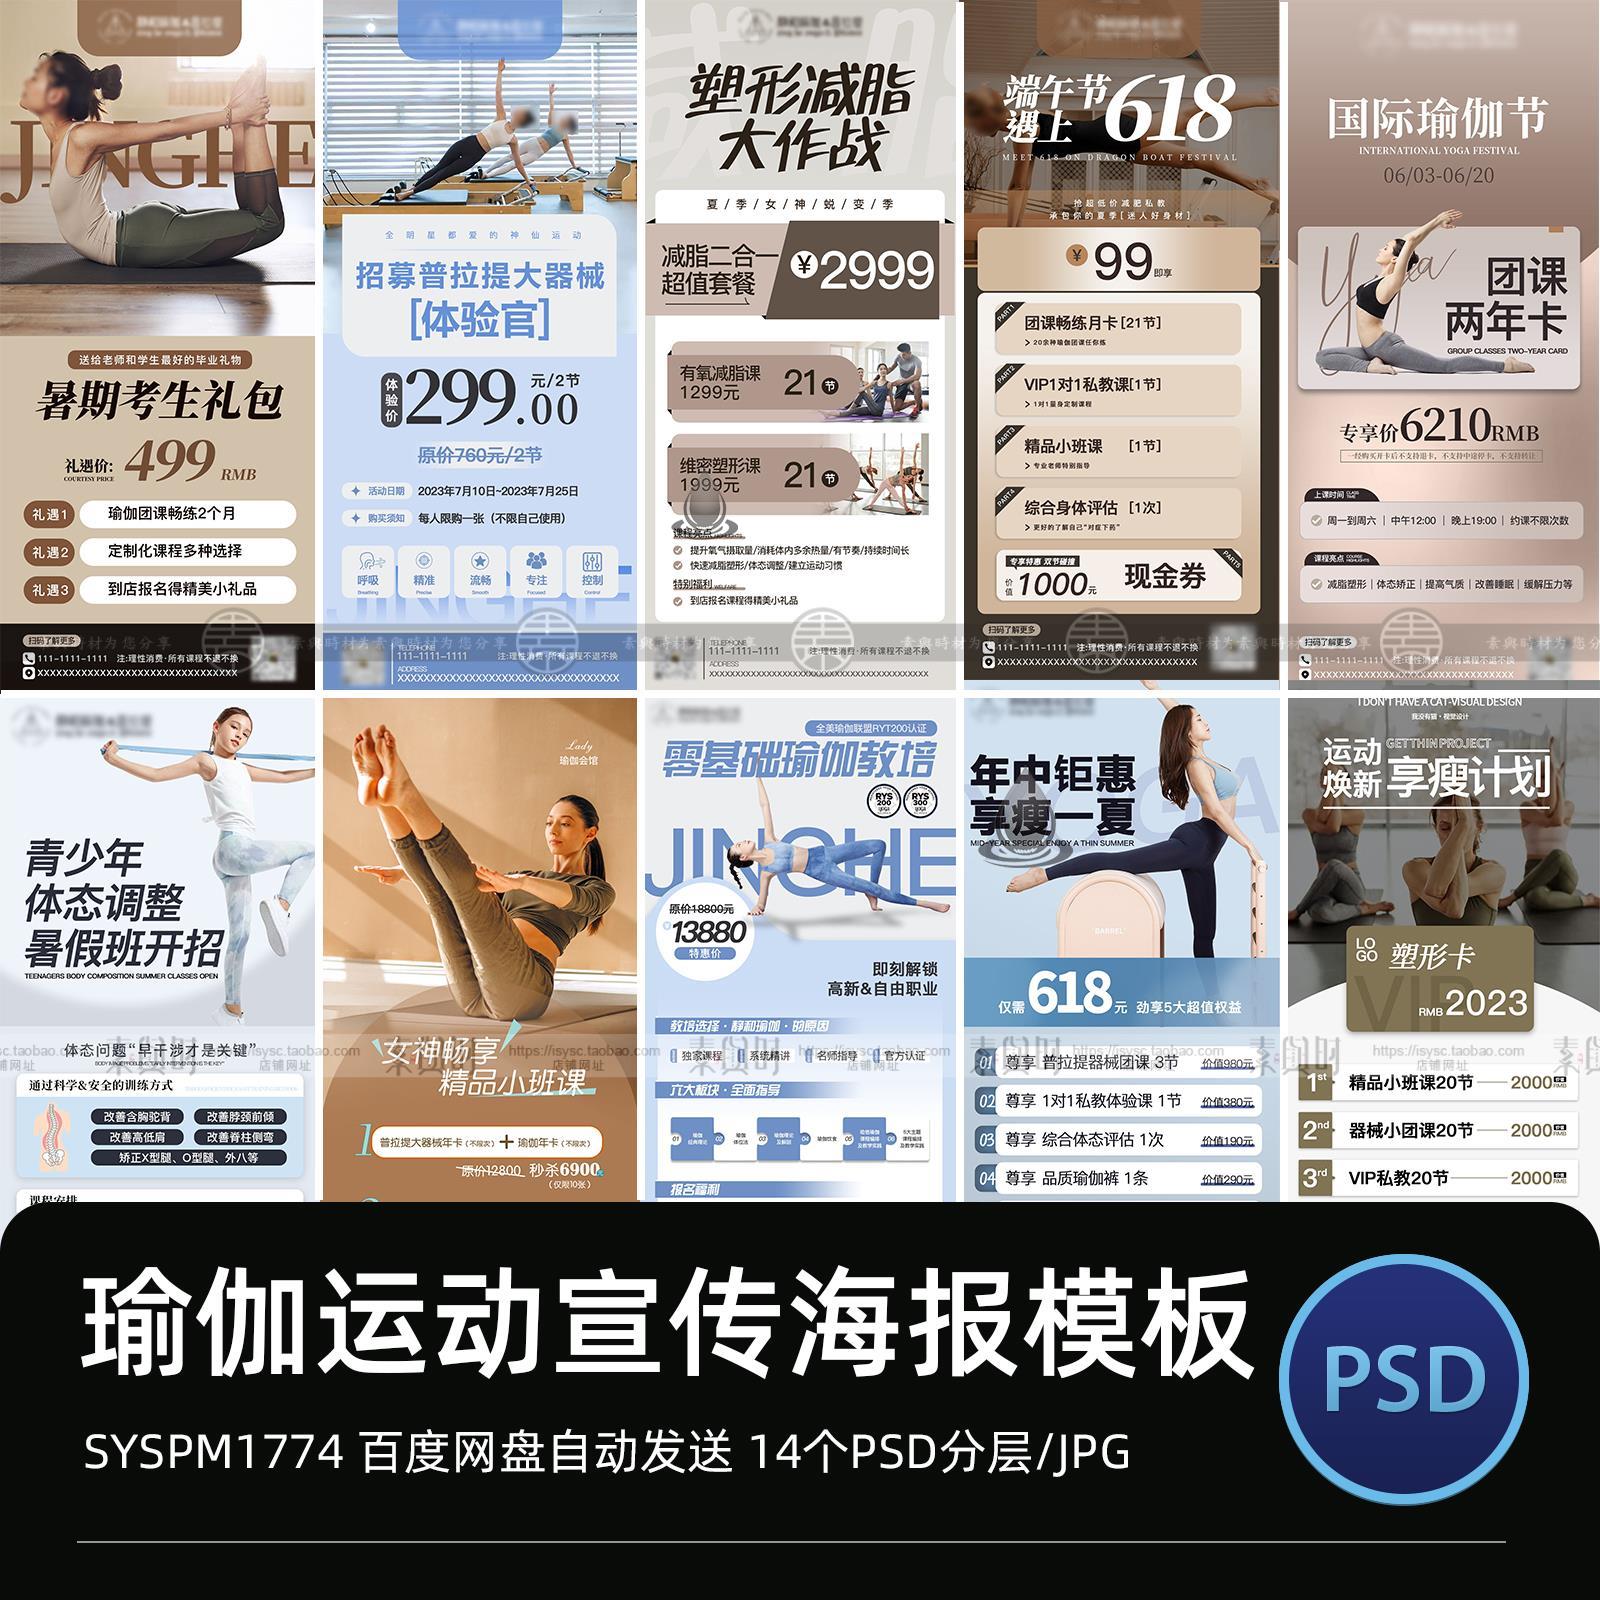 瑜伽健身开业活动电子版宣传海报宣传广告平面设计PS设计模板素材